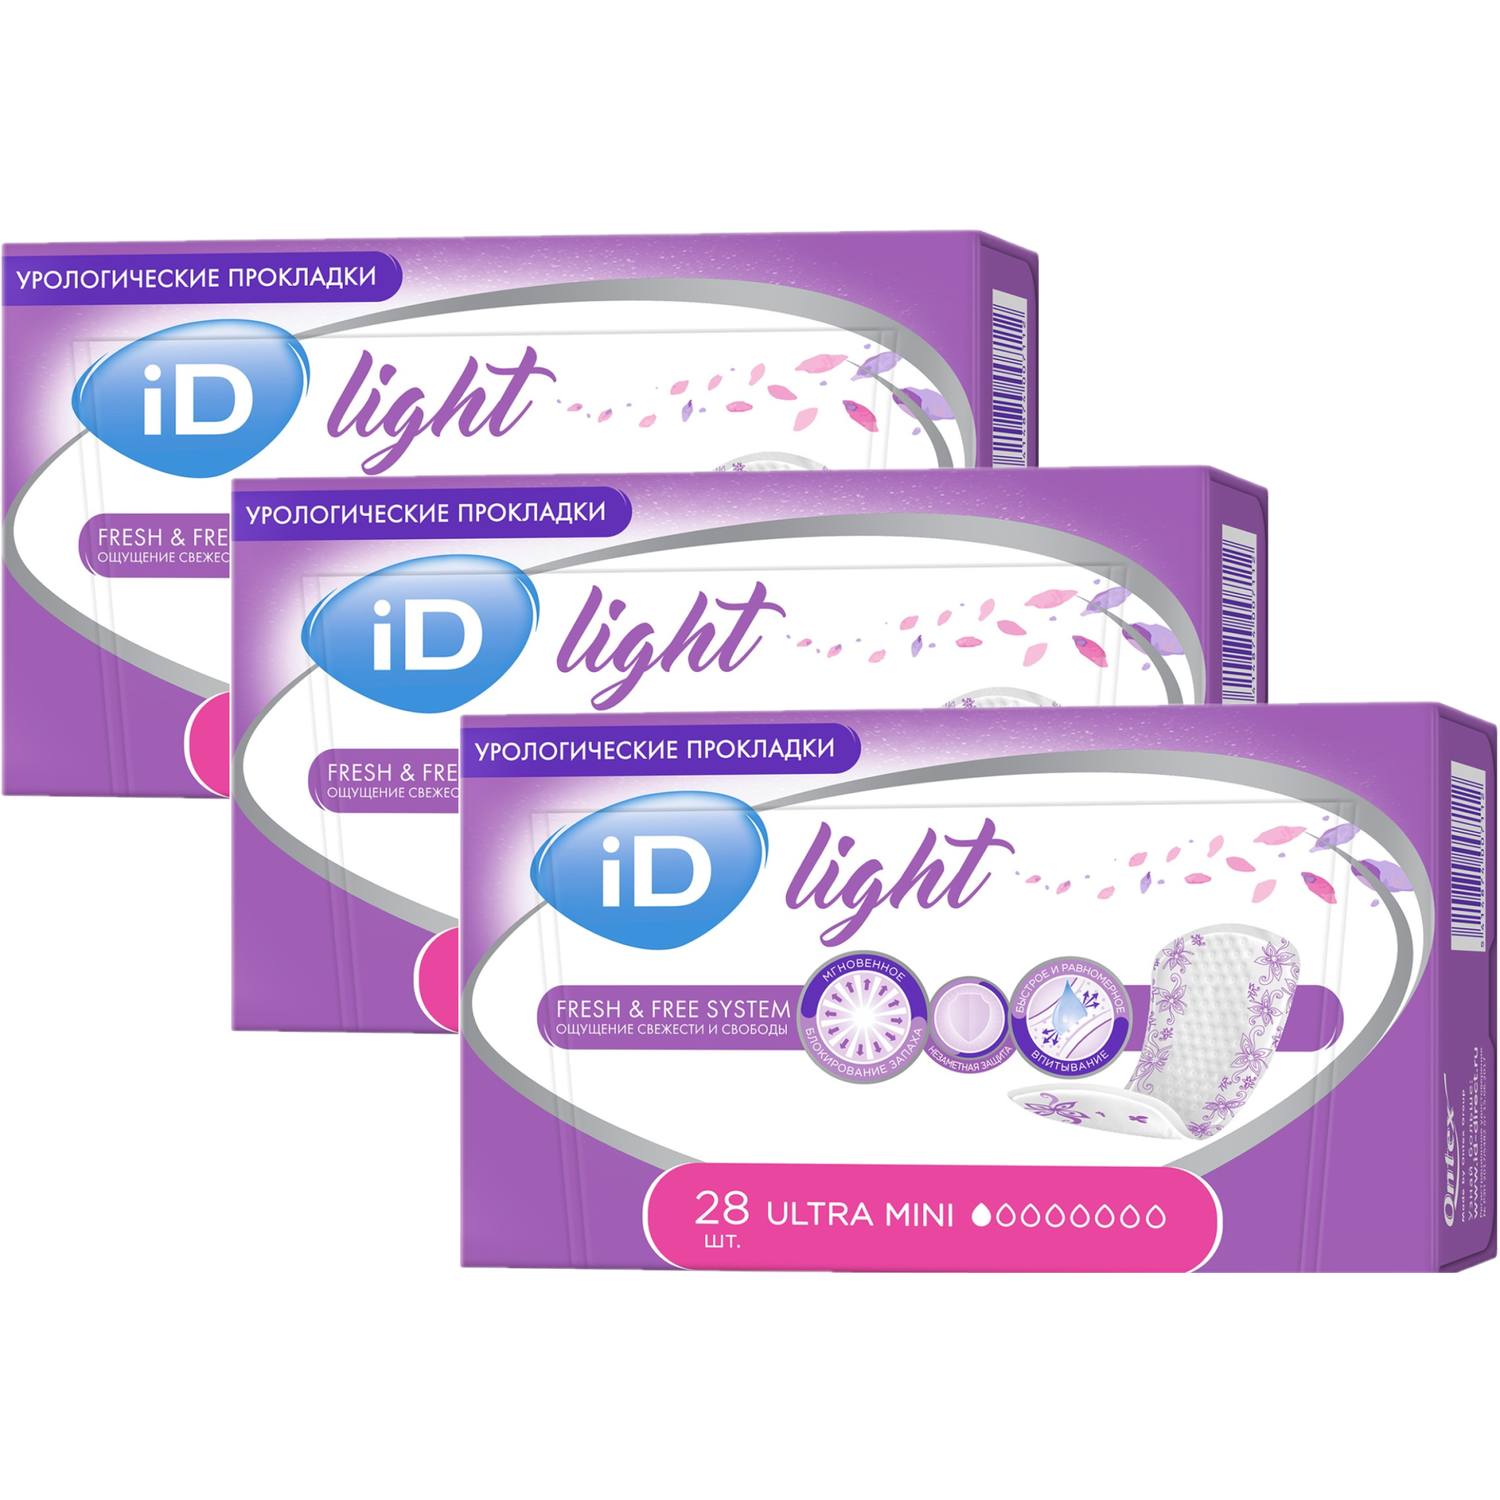 Прокладки урологические iD LIGHT Ultra mini 3 упаковки по 28 шт - фото 2